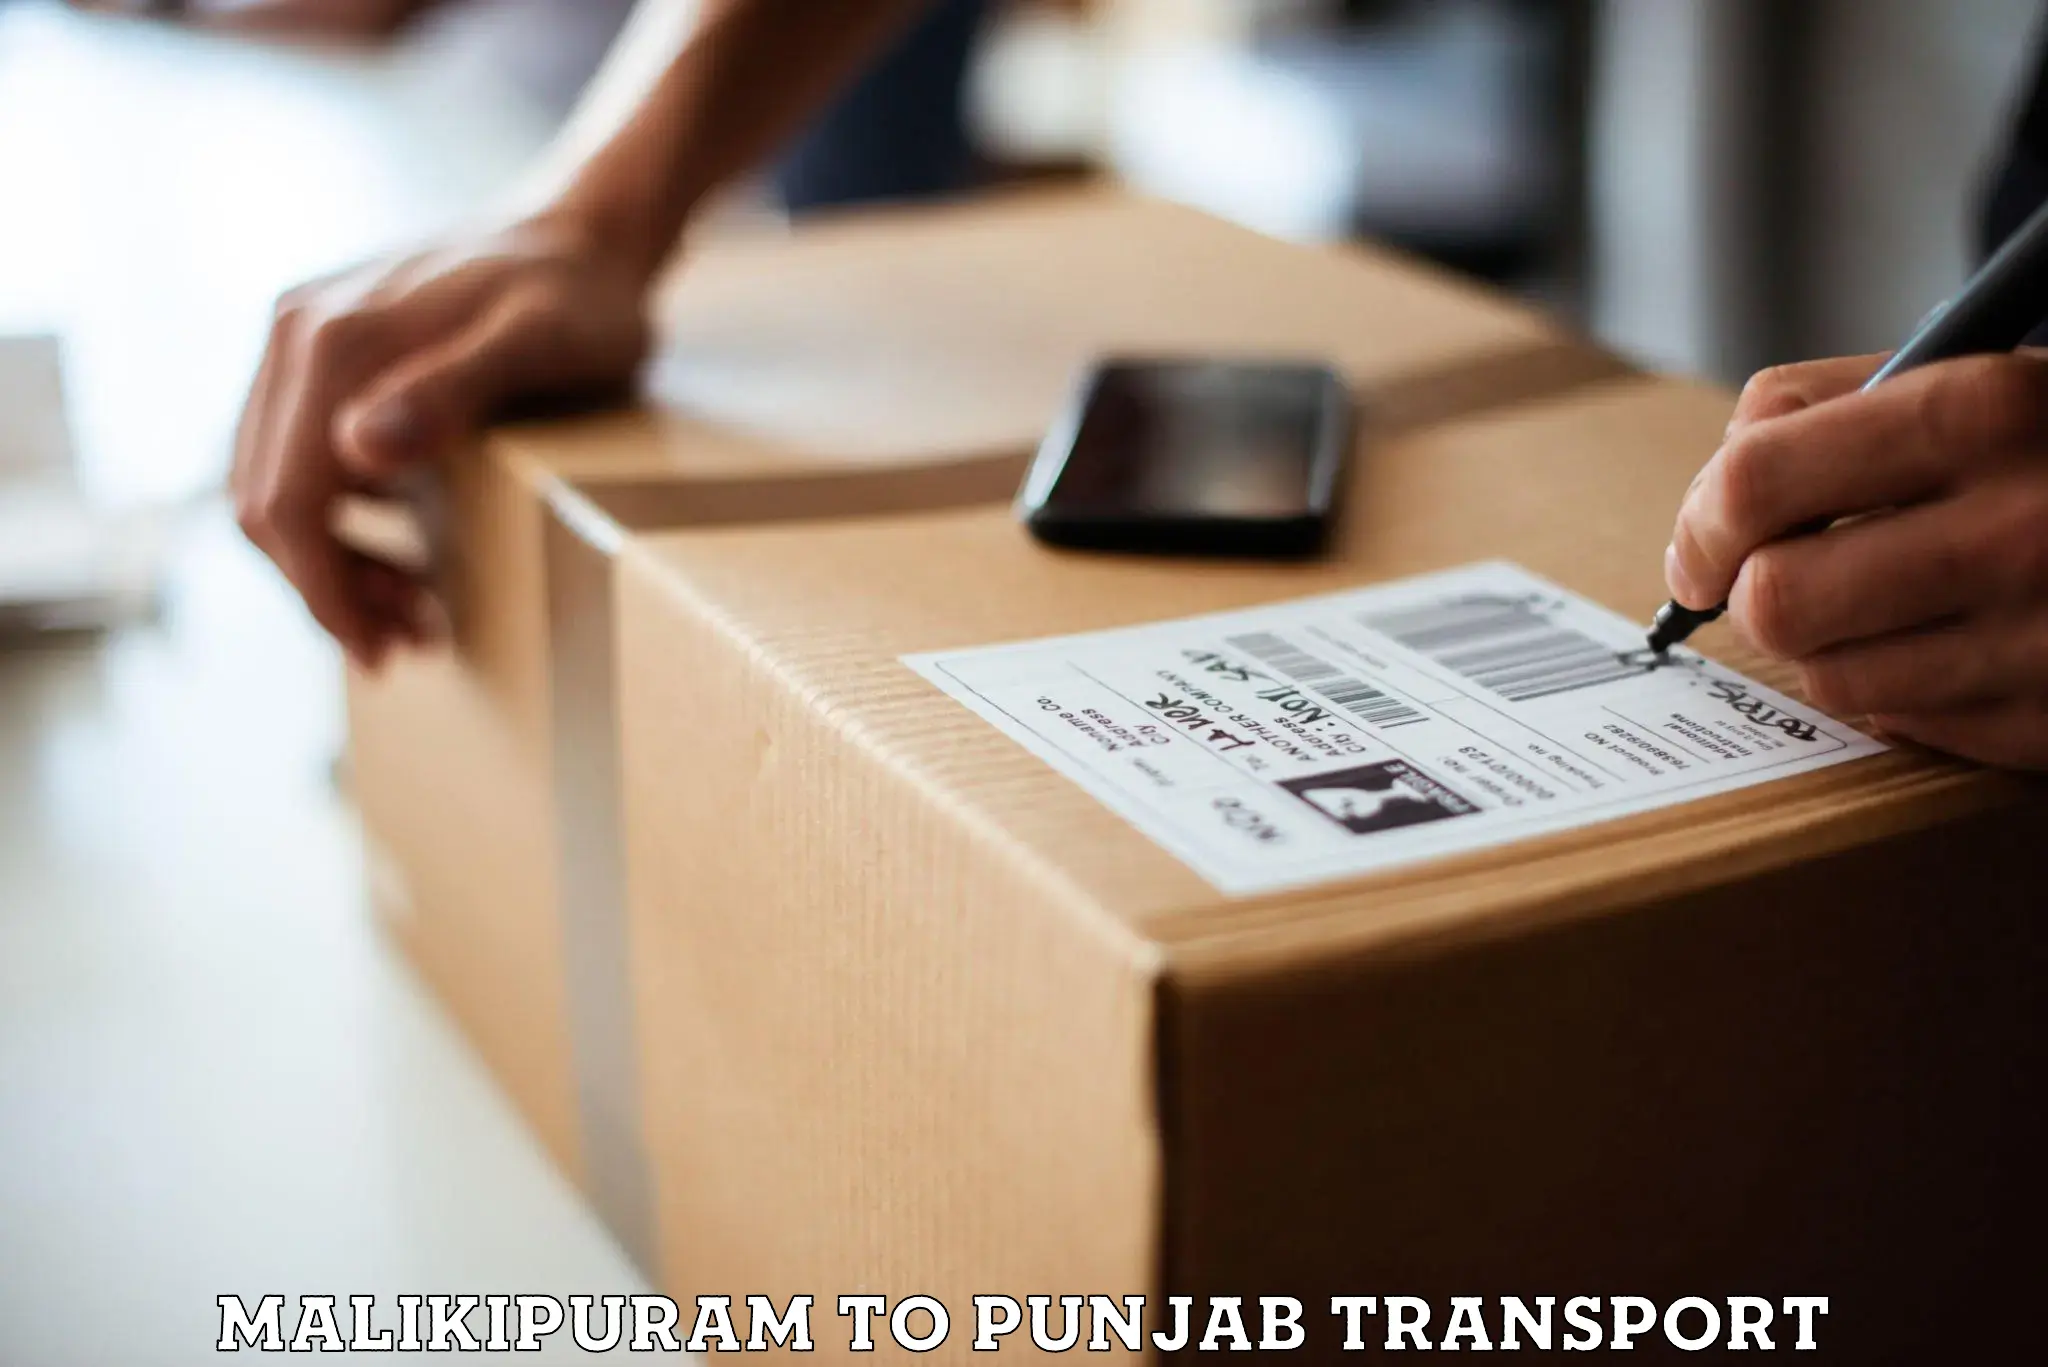 Two wheeler parcel service Malikipuram to Anandpur Sahib